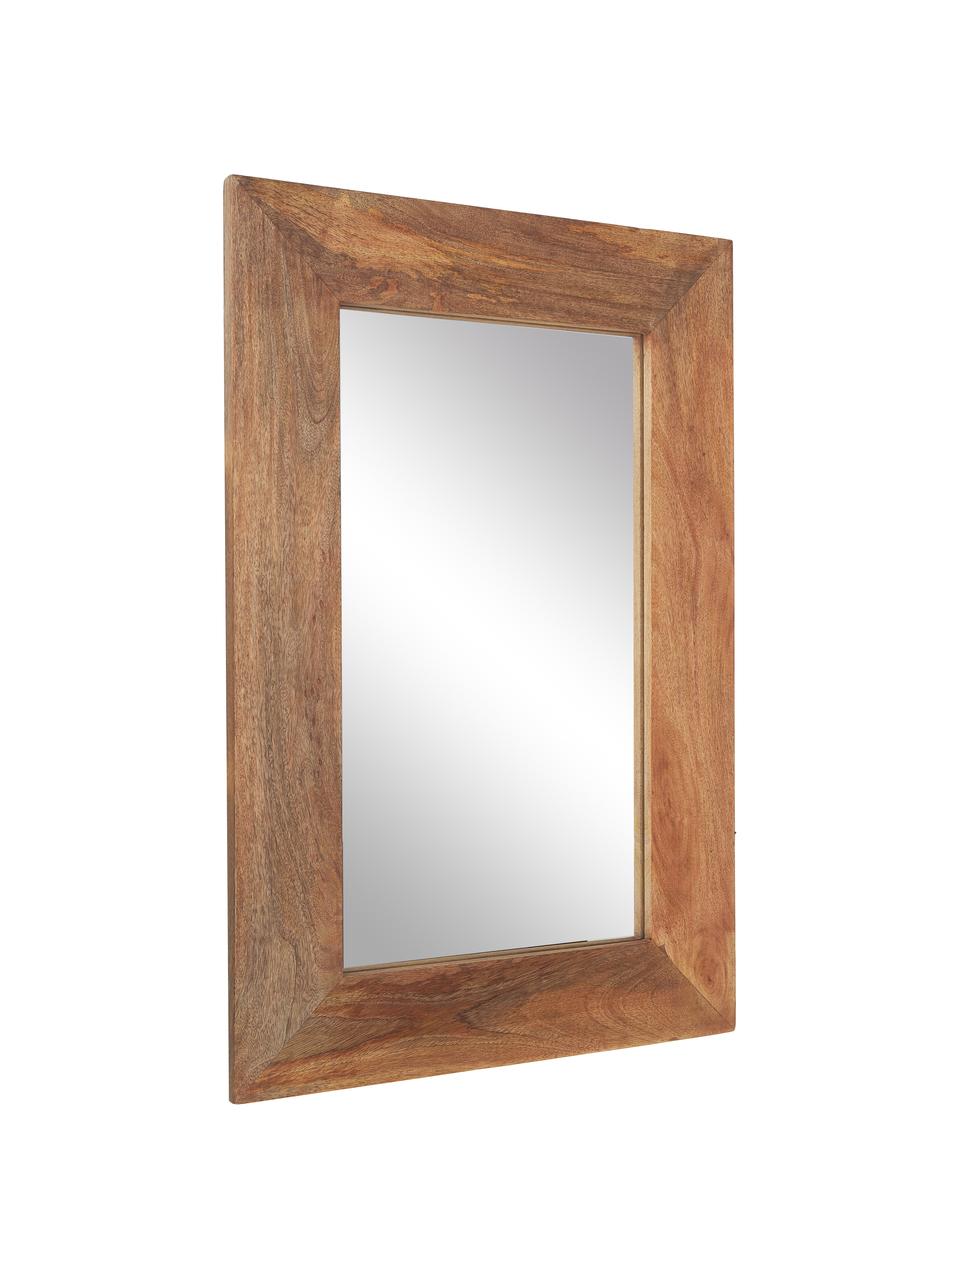 Obdélníkové nástěnné zrcadlo z mangového dřeva Indigo, Mangové dřevo, Š 61 cm, V 92 cm